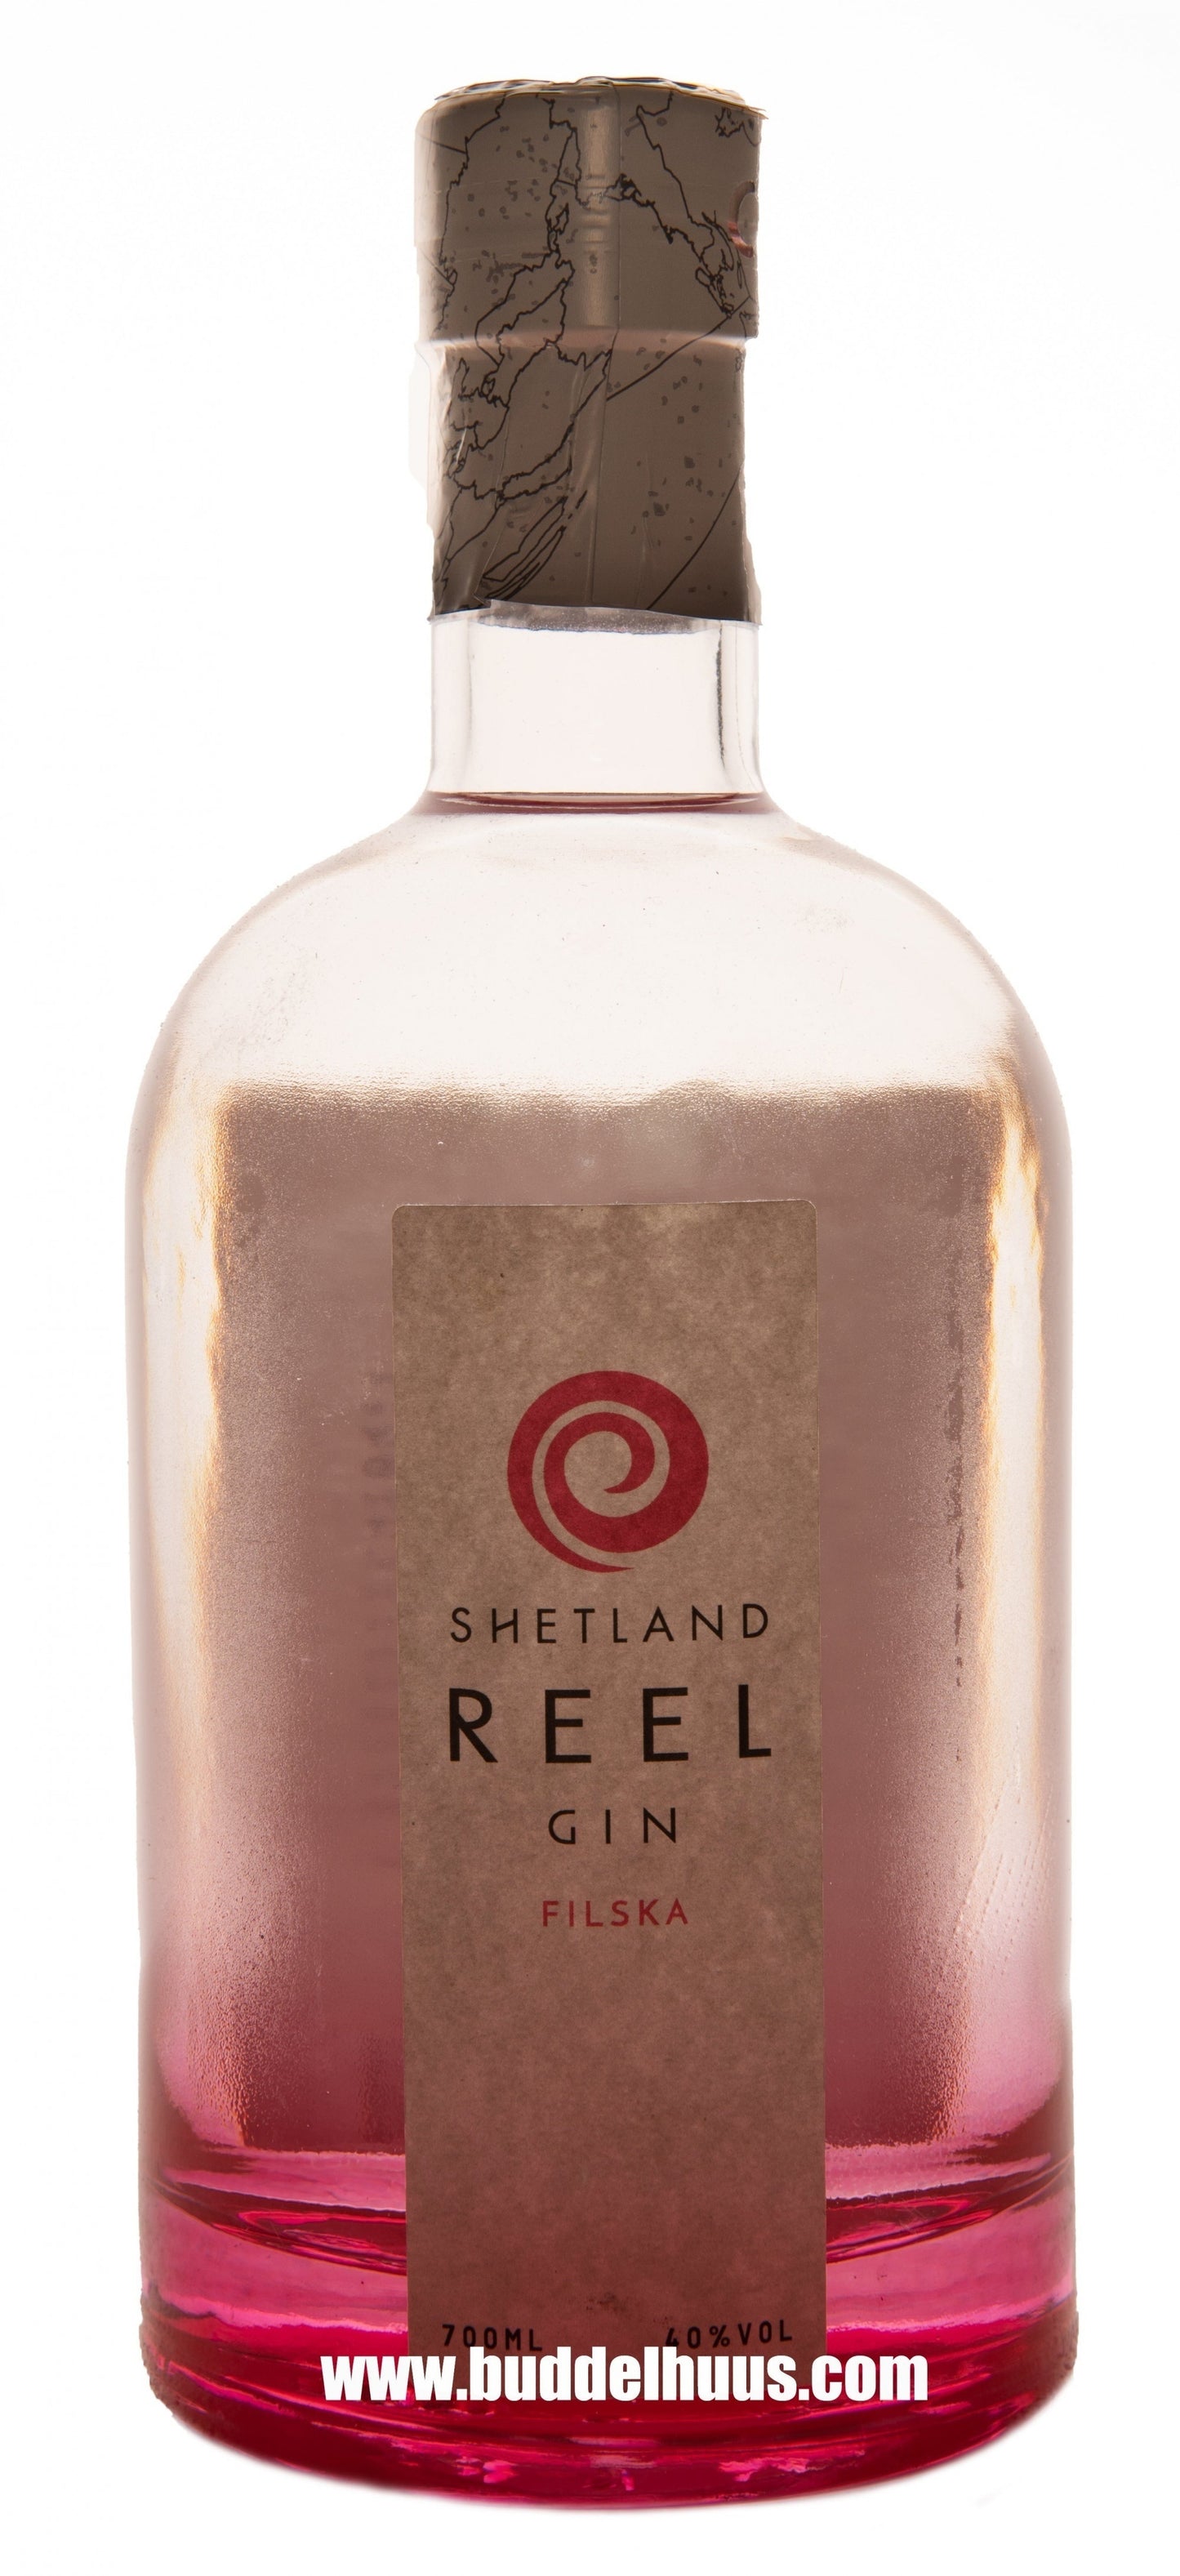 Shetland Reel Gin Filska